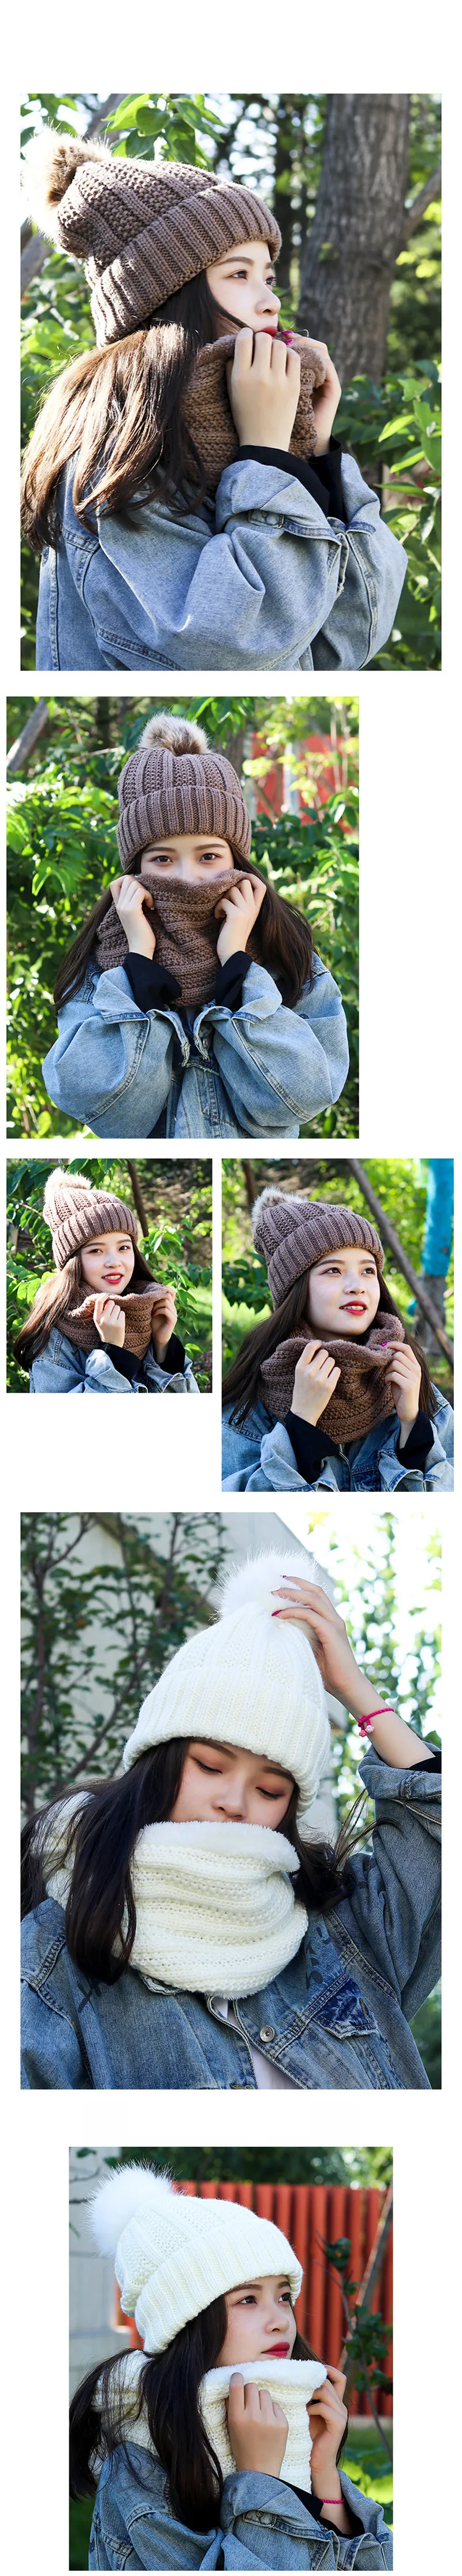 SILOQIN длинный шарф вязаная шапочка-бини Для женщин комплект из двух предметов: одна теплая зимняя шапка с плюшевой подкладкой плотная, ветронепроницаемая Лыжная Головные уборы Шапки